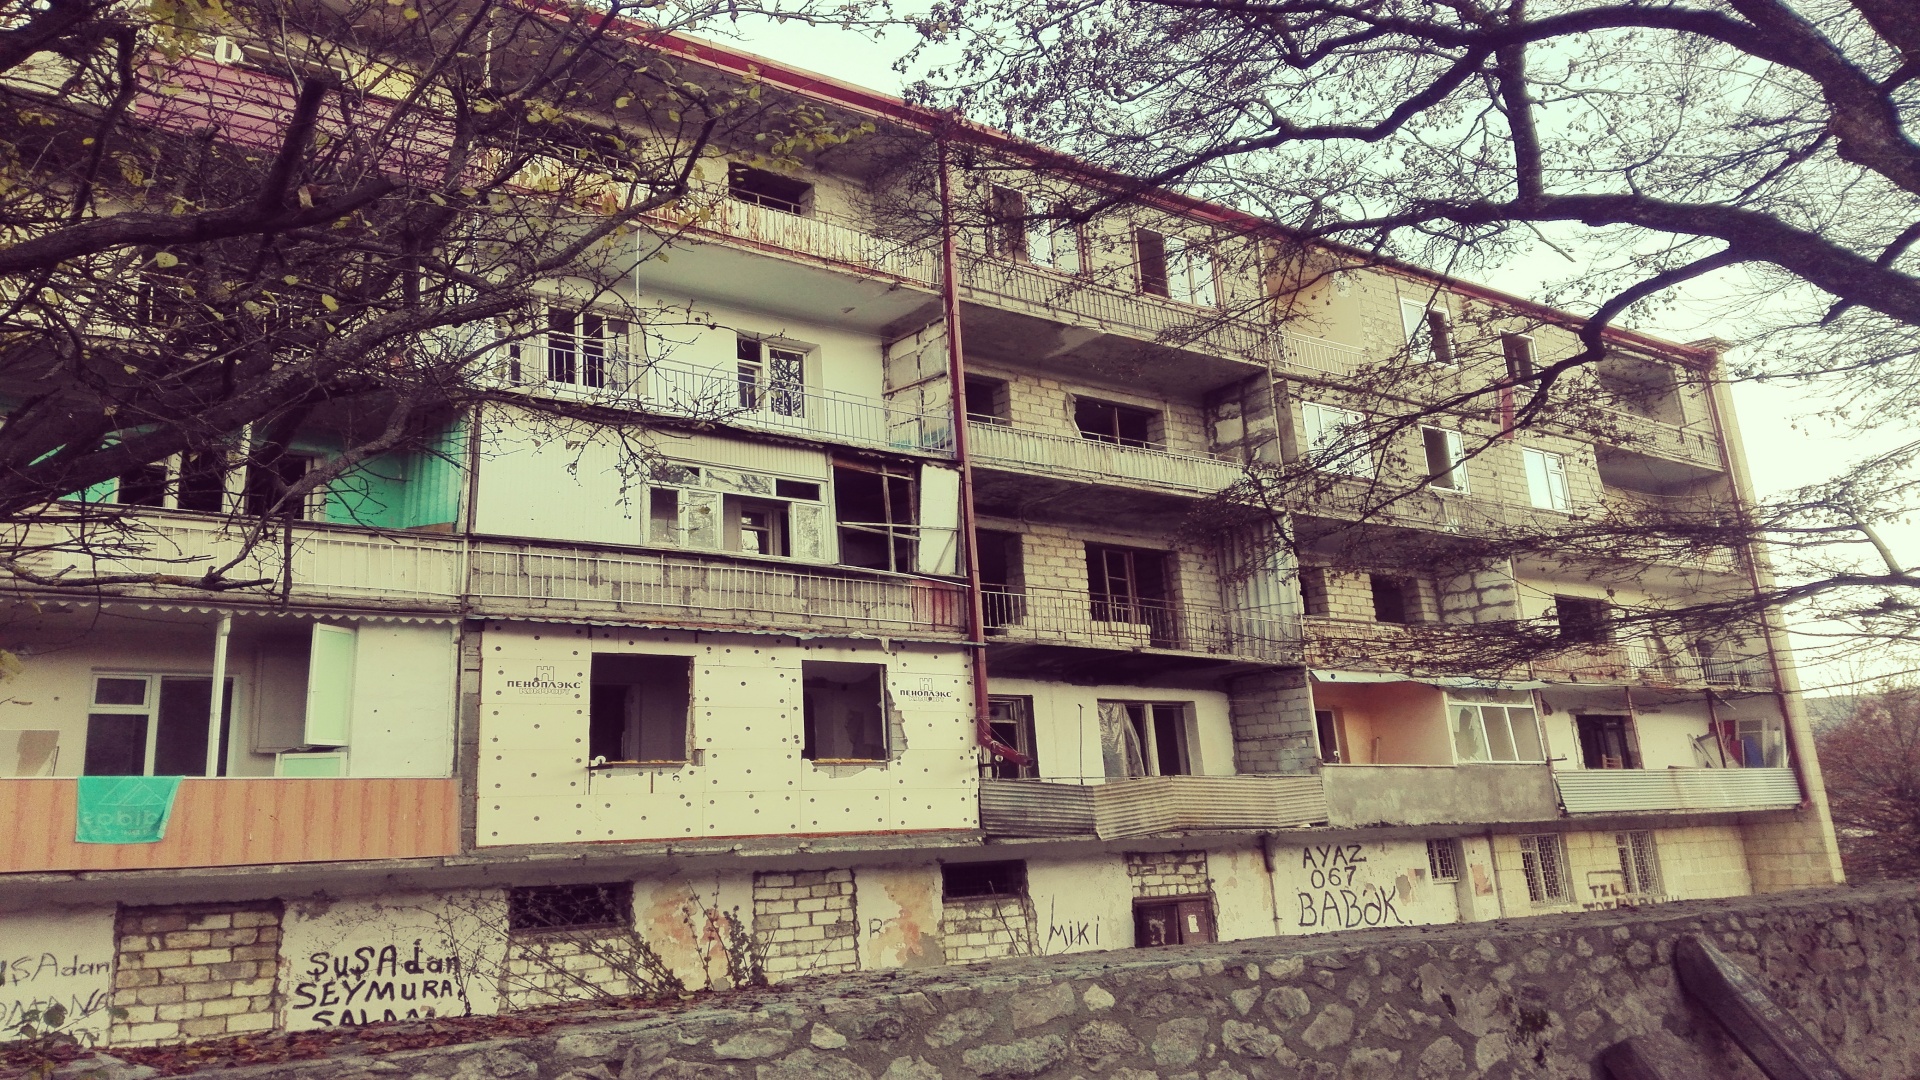 Elhagyatott, romos házak, lövésnyomok – a megmaradt épületeket leginkább ilyen jelzőkkel lehet illetni. A háború következtében közel 70 ezer örmény hagyta hátra eddigi otthonukat.